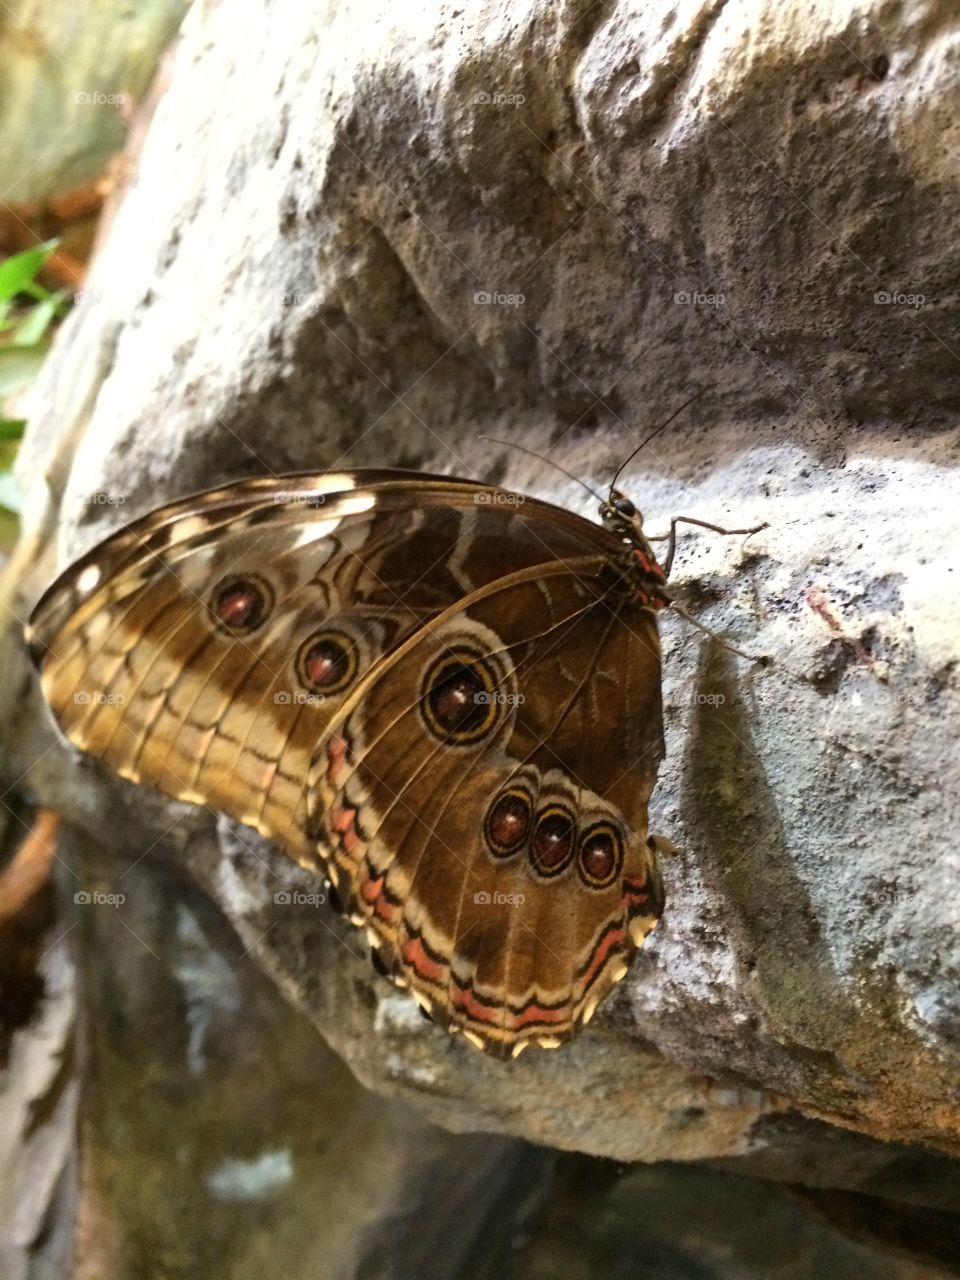 butterfly1